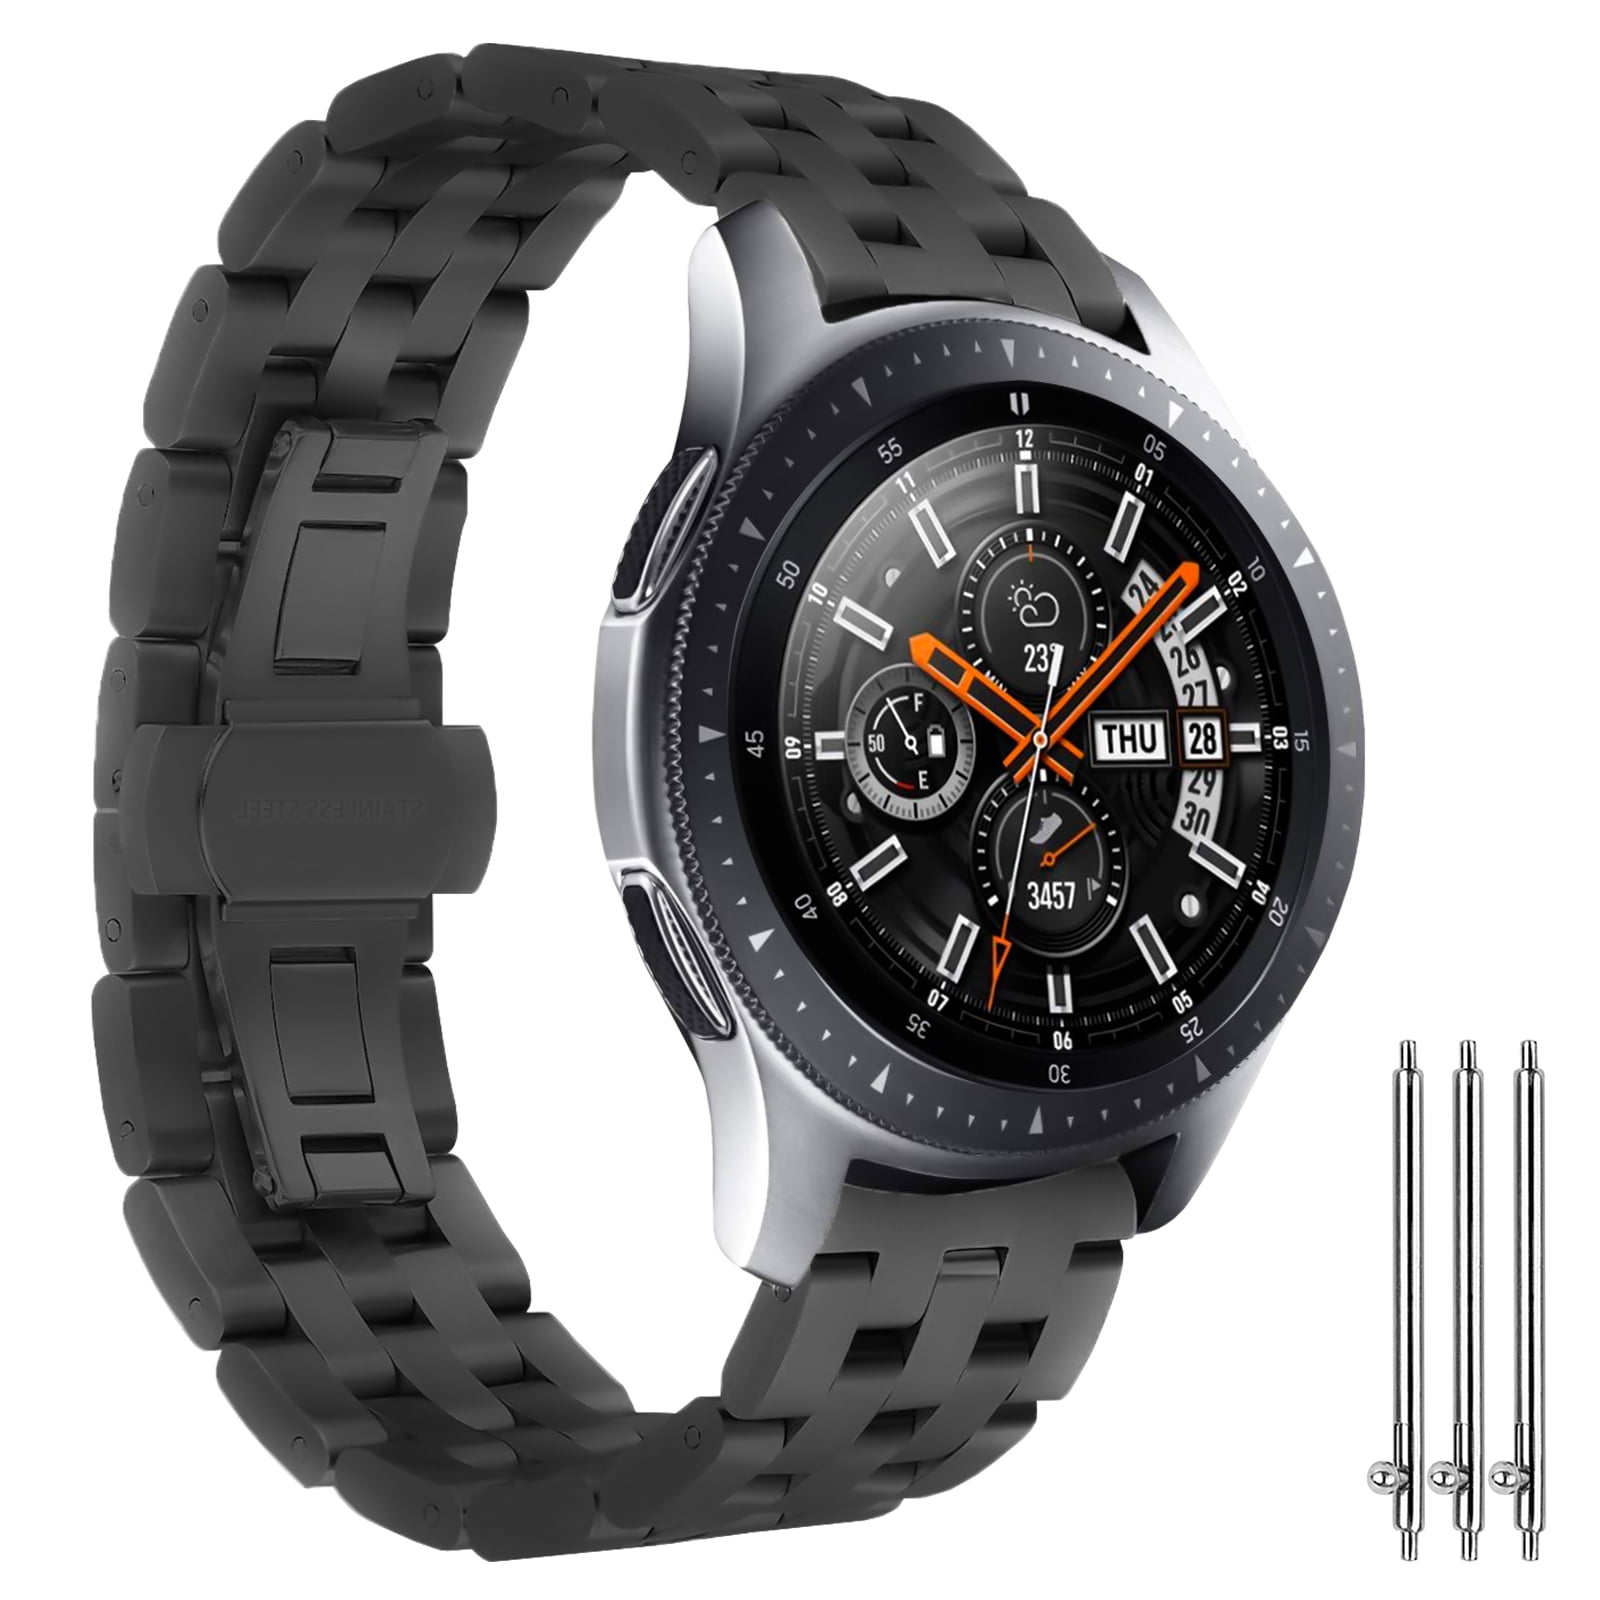 EEEkit - Compatible with Samsung Galaxy Watch 3 Band, EEEkit Stainless Samsung Galaxy Watch 3 Stainless Steel Bands